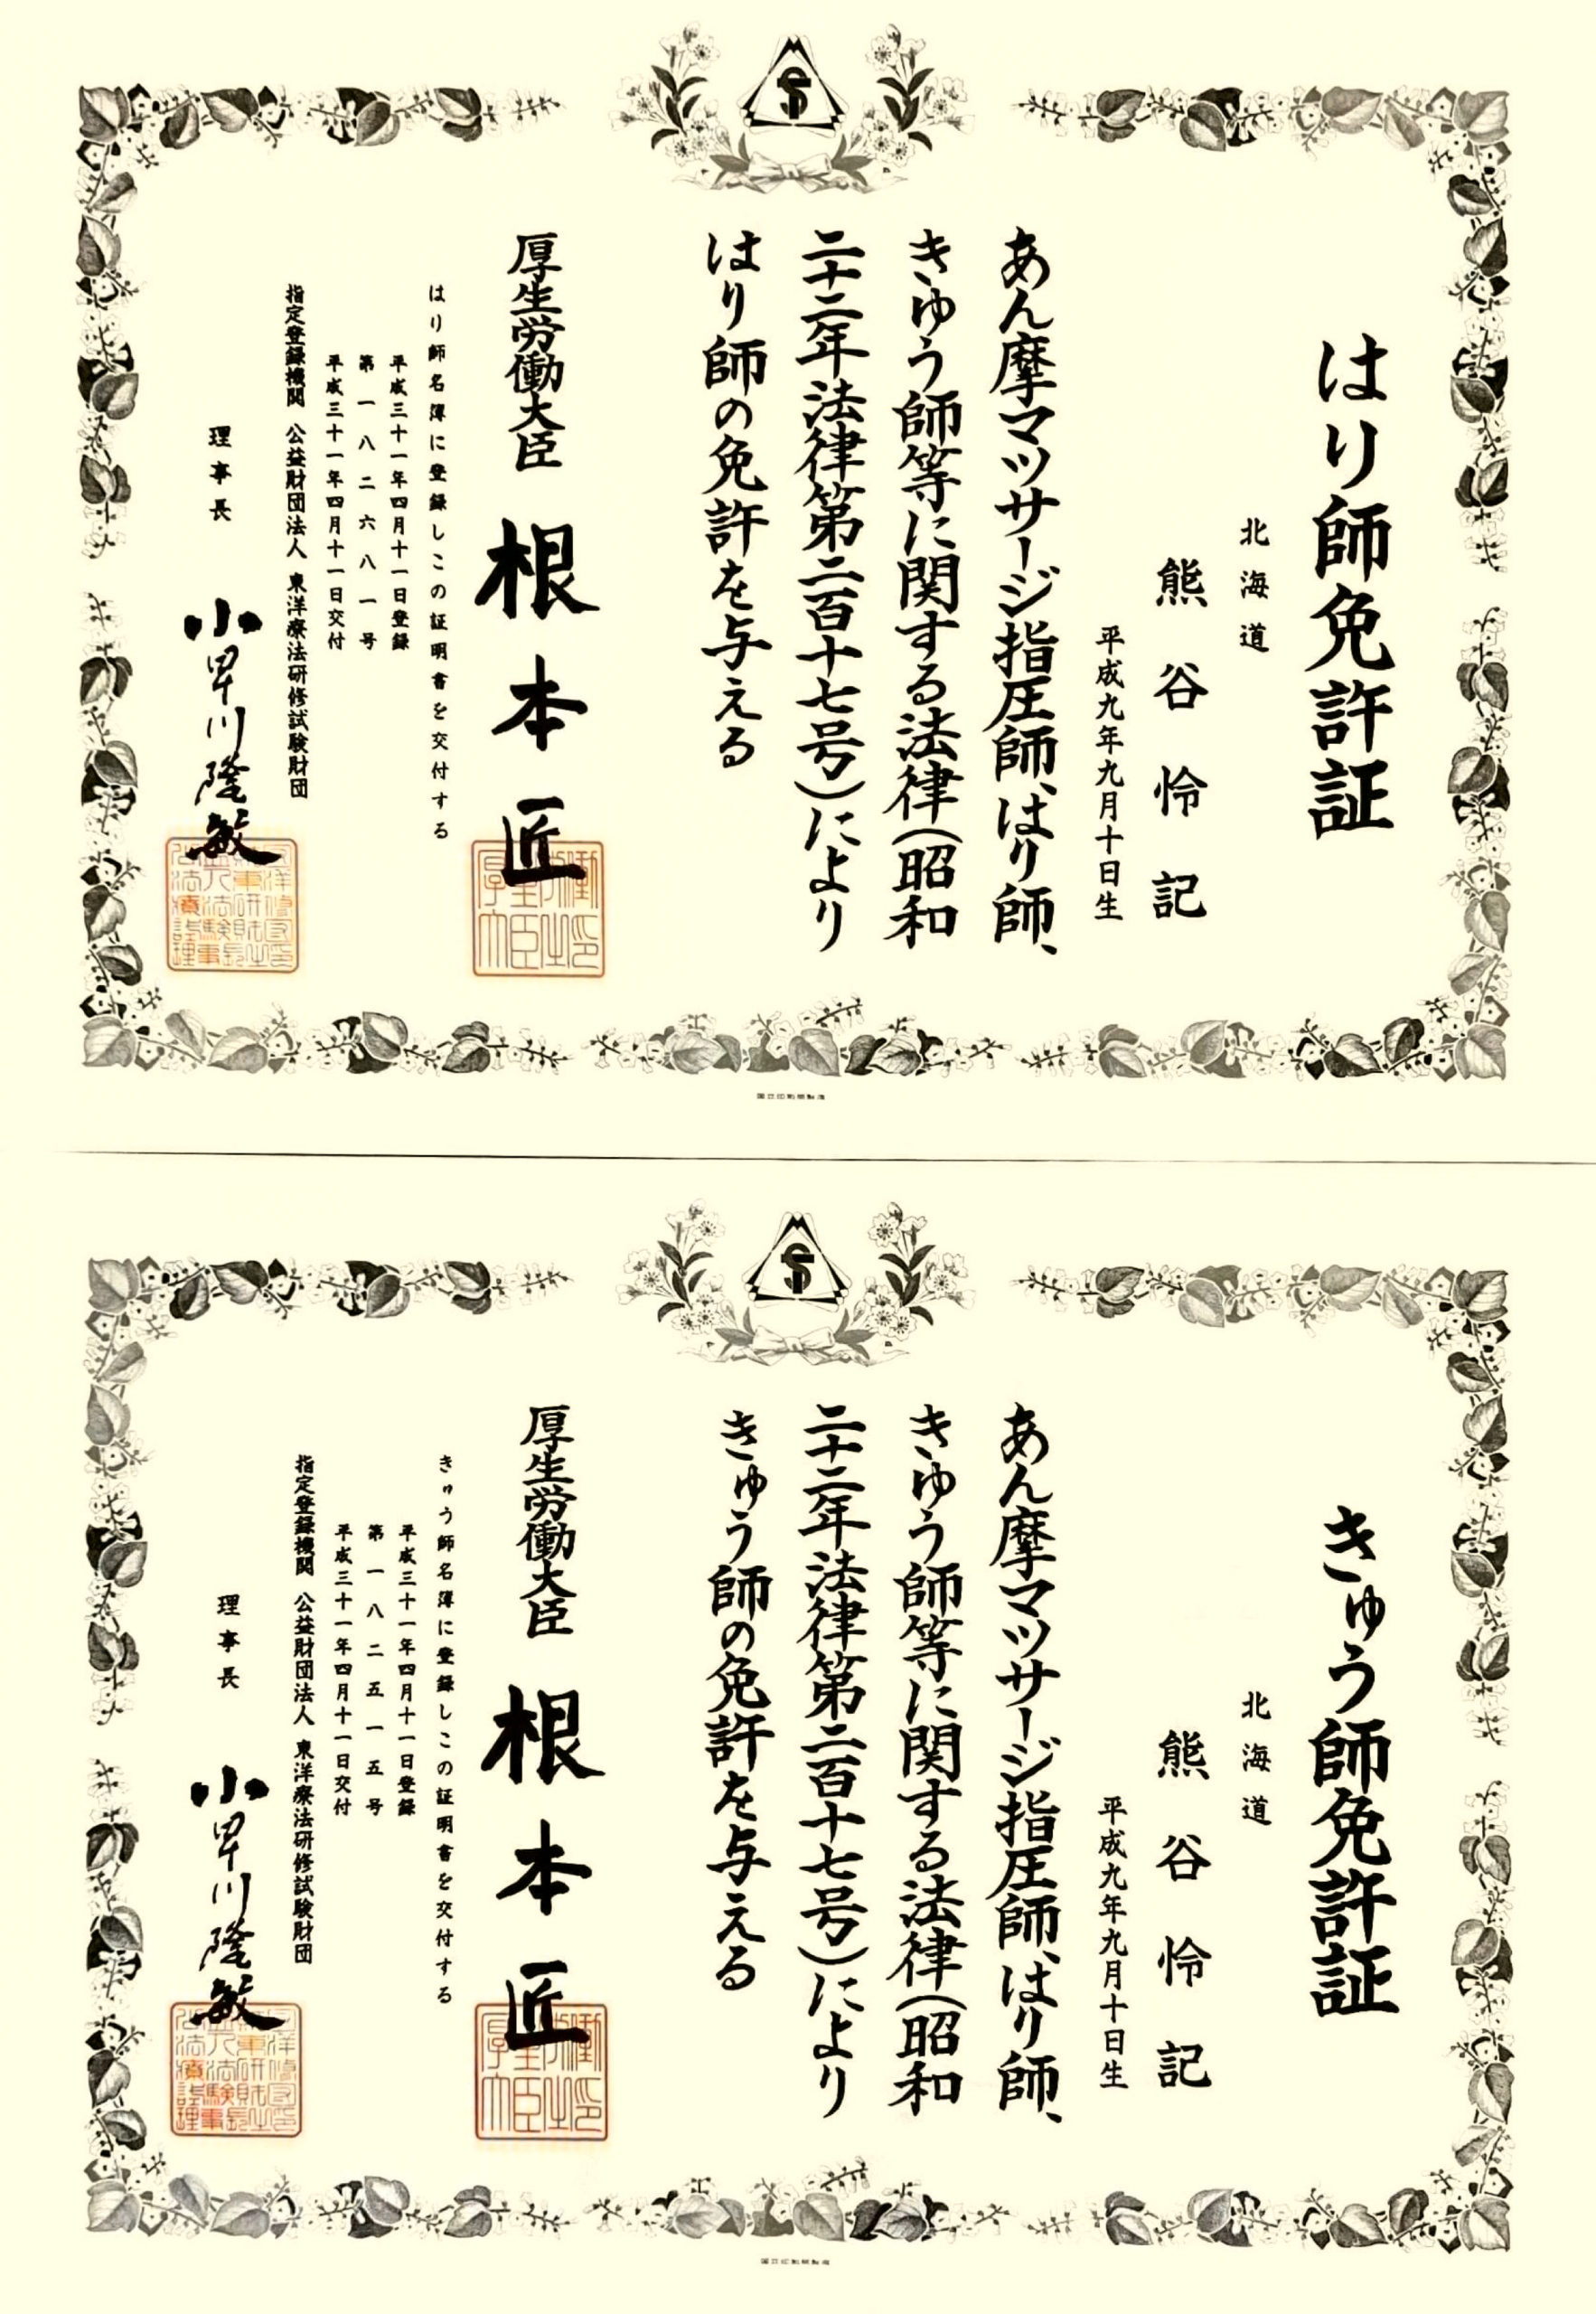 NAORU整体 恵比寿院　熊谷怜記の資格証明書